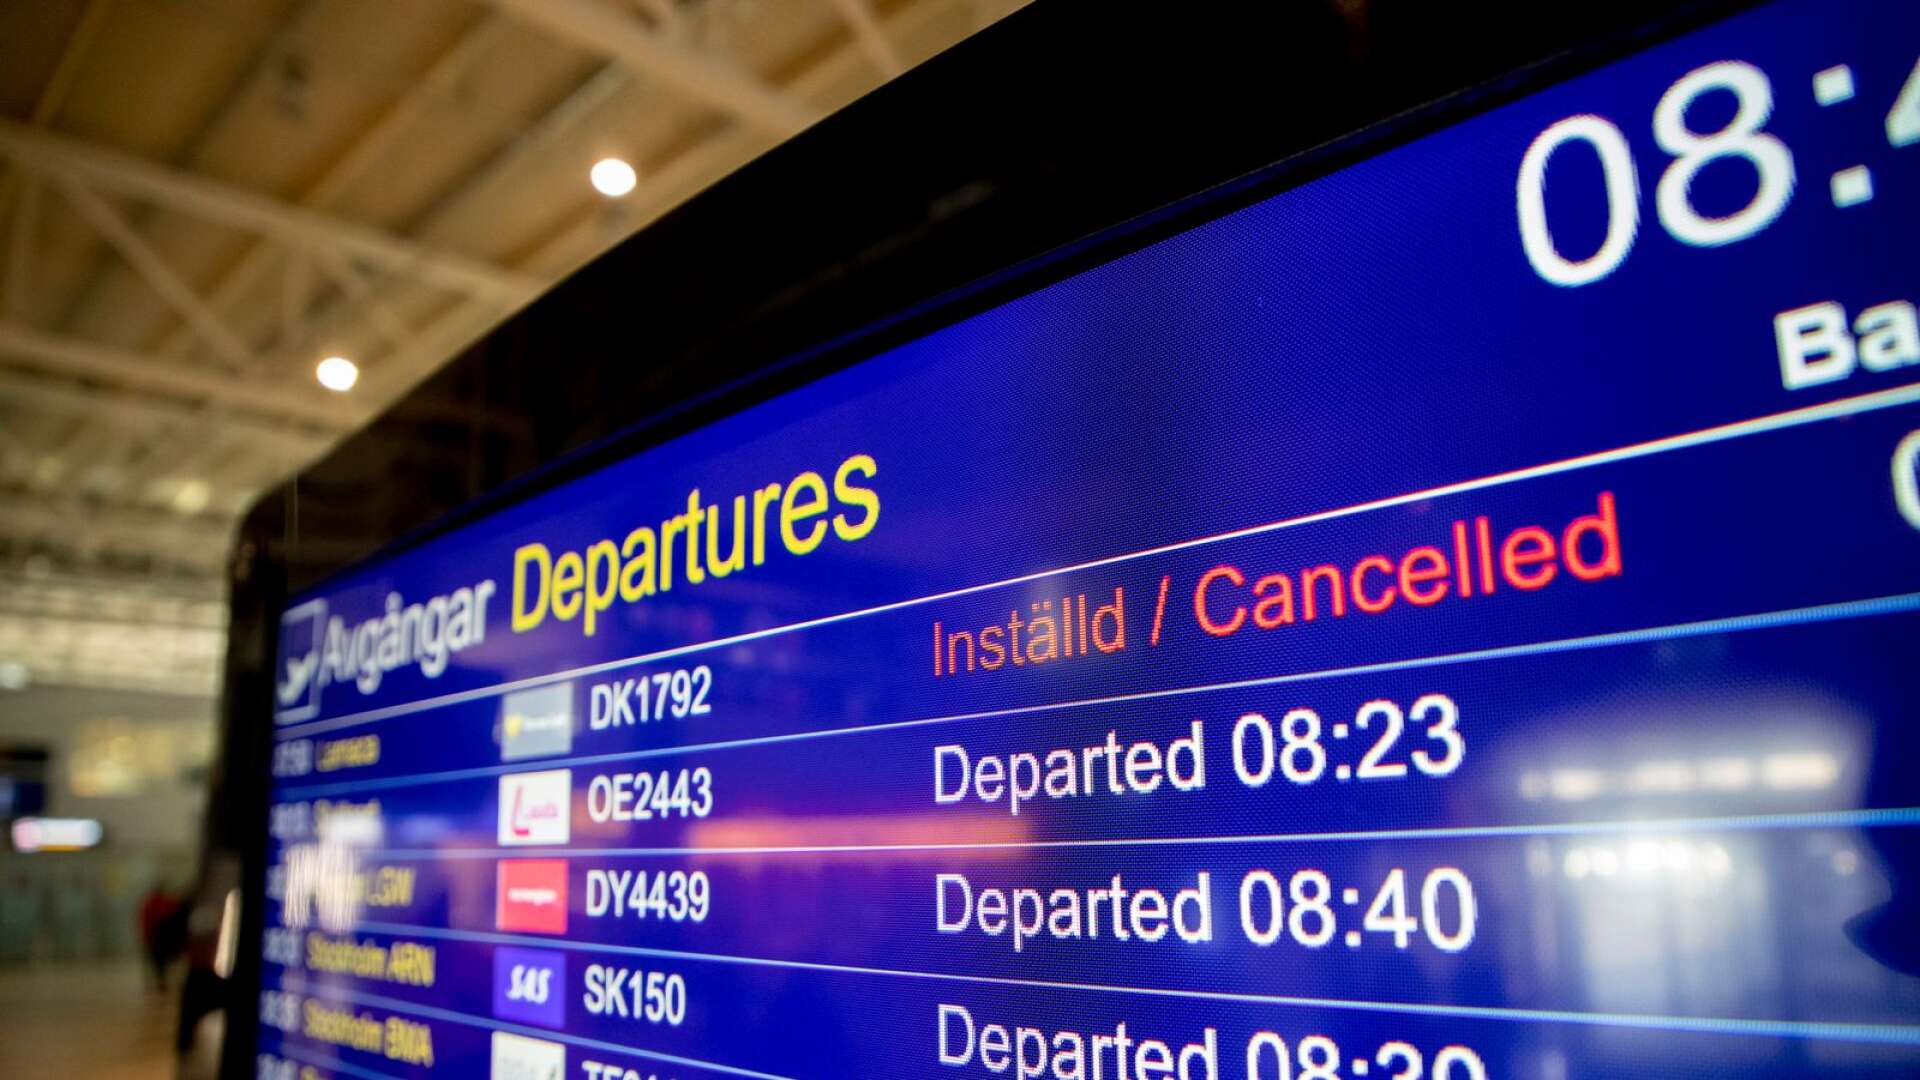 Tusentals resenärer drabbades av inställda flighter på Landvetter flygplats på grund av att den brittiska resejätten Thomas Cook, som äger Ving, försatts i konkurs.